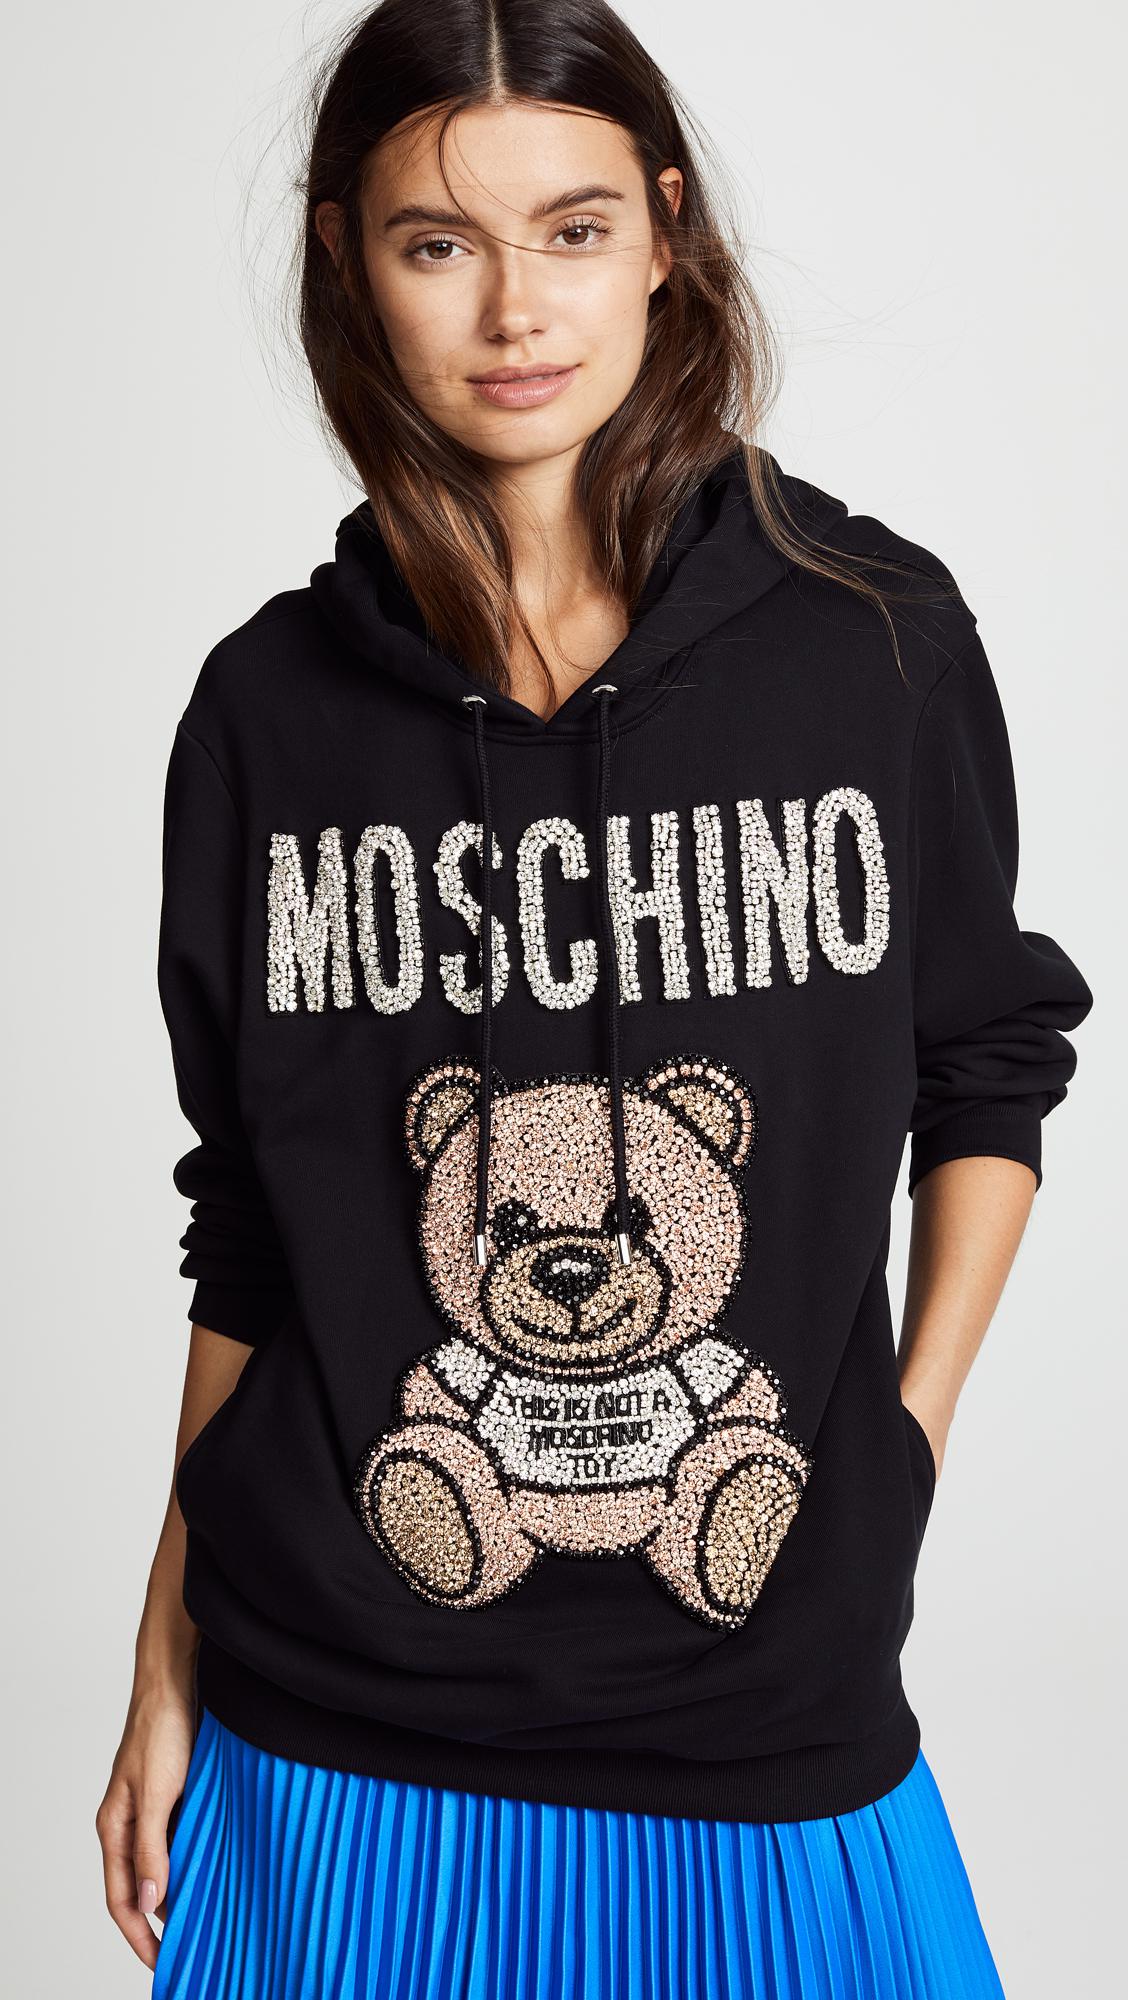 moschino hoodie womens